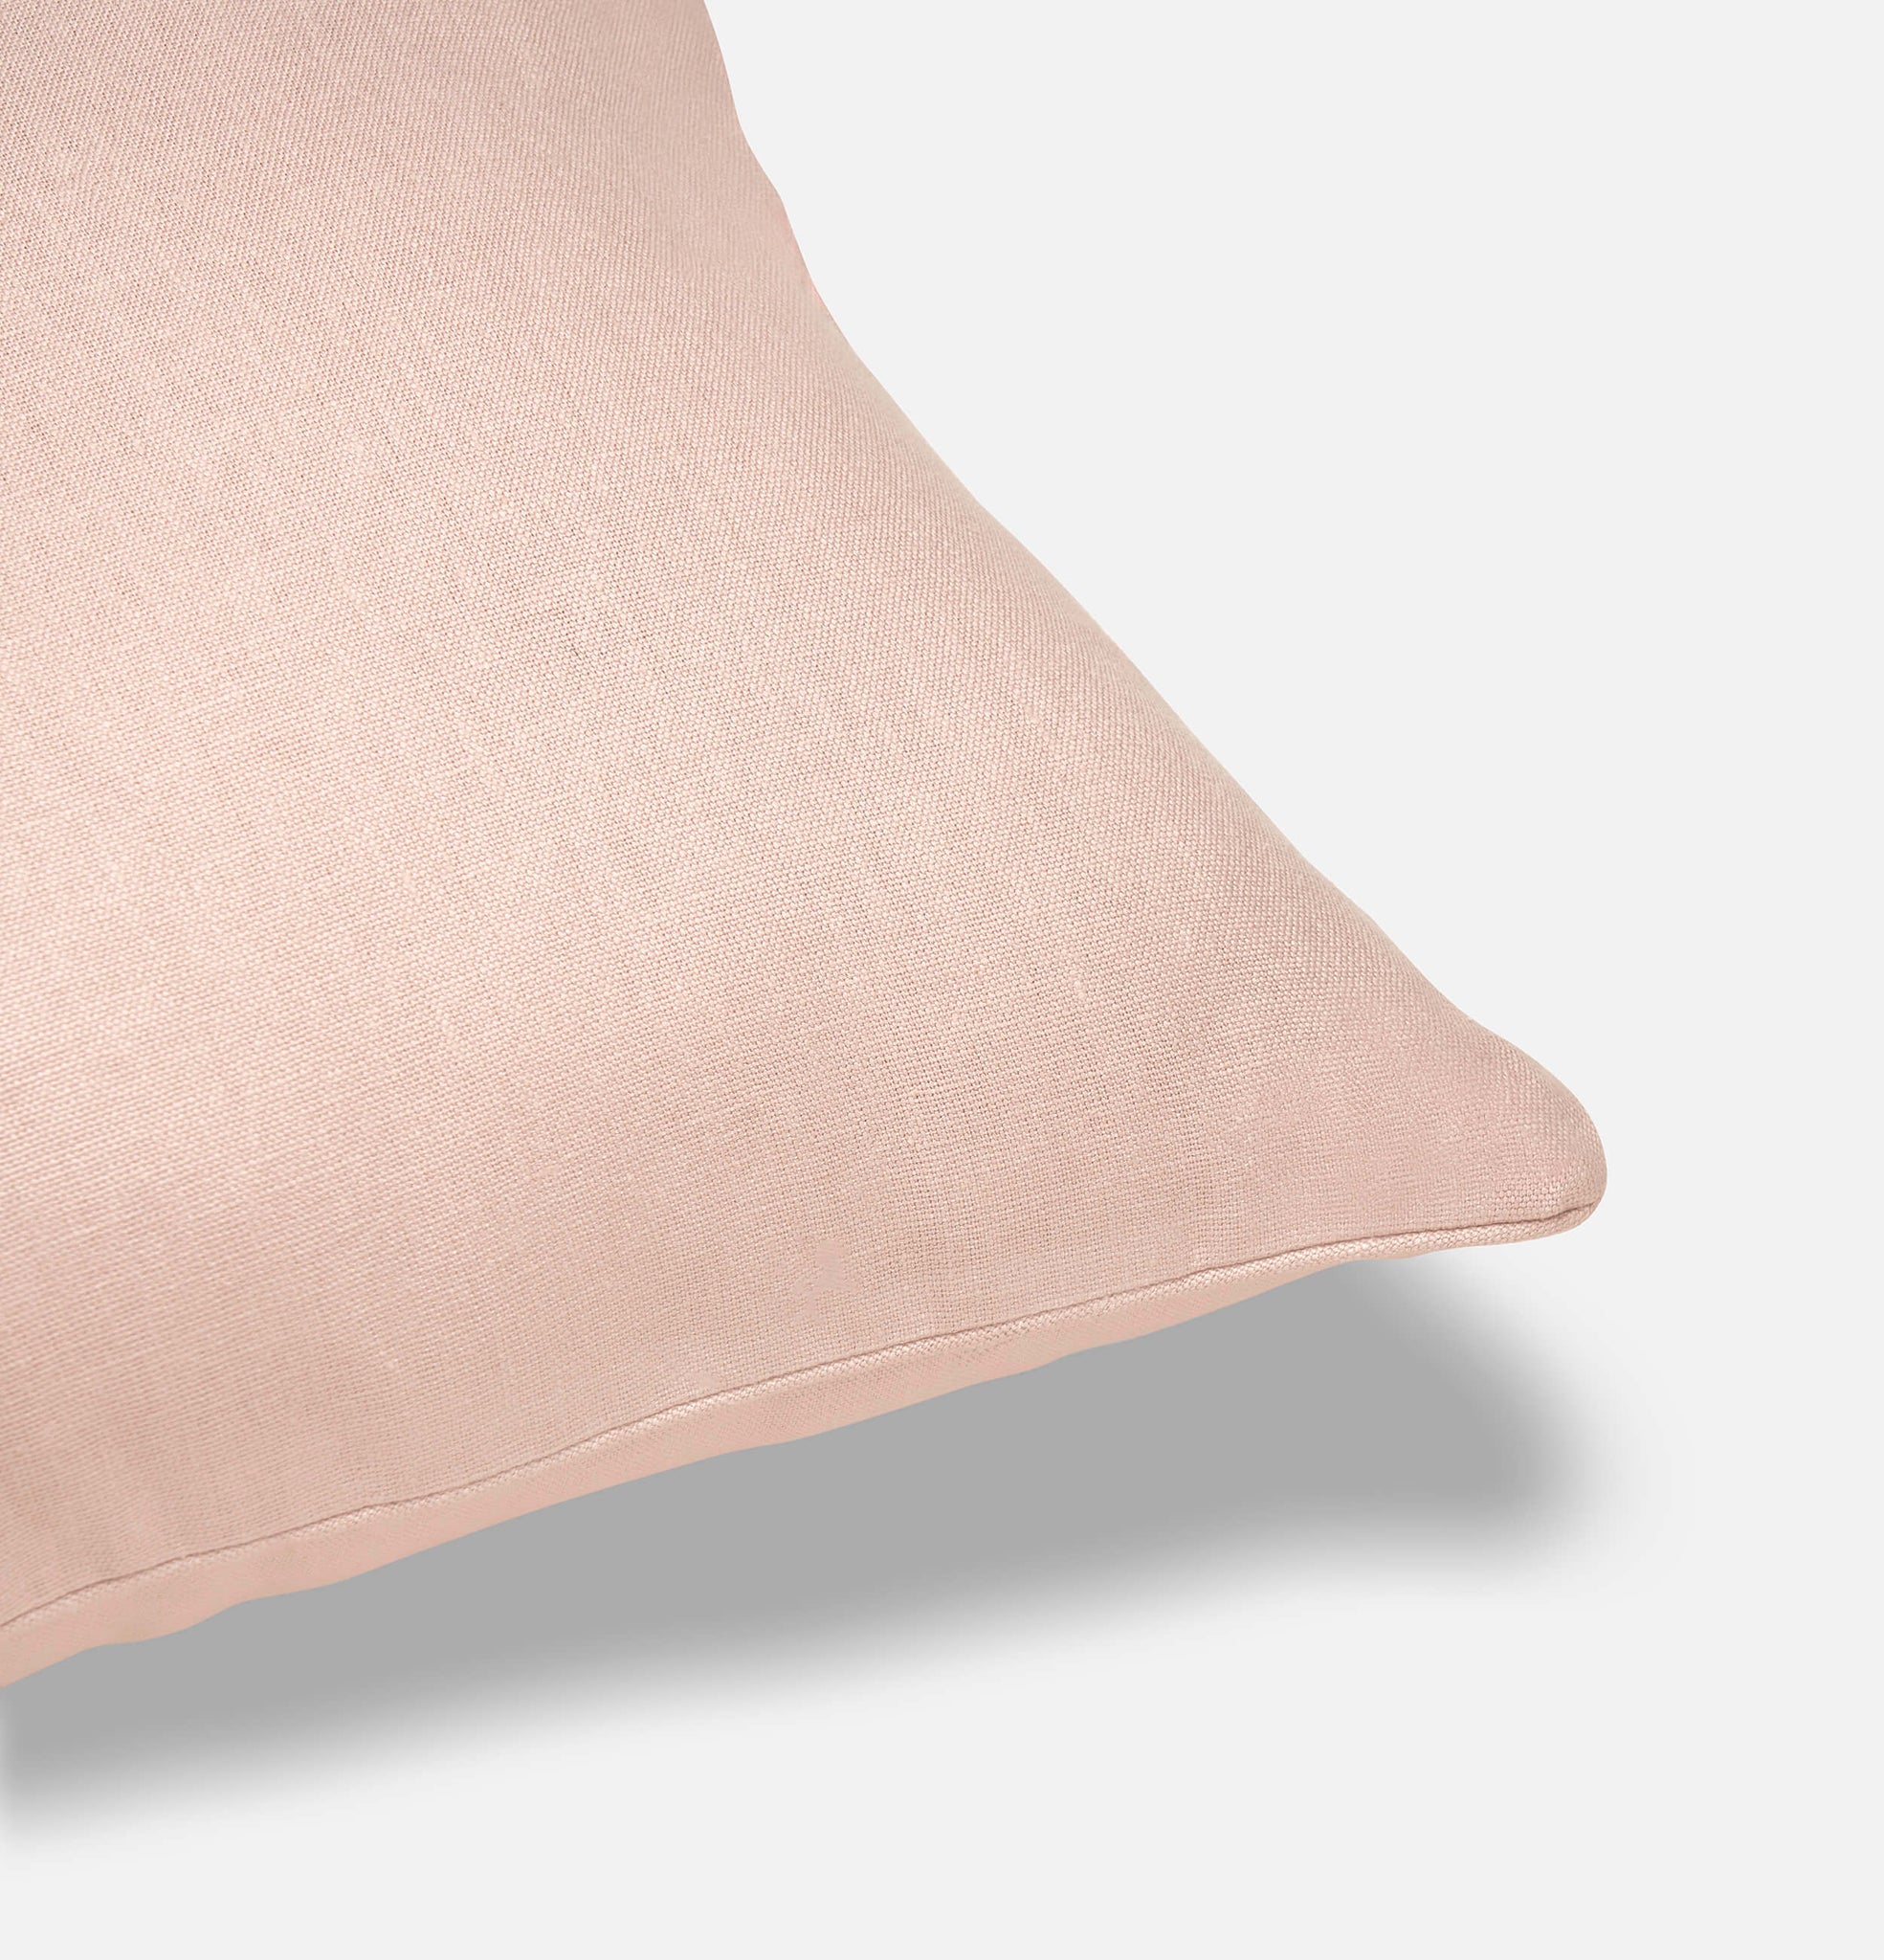 Corner detail of Midsummer pink linen cushion